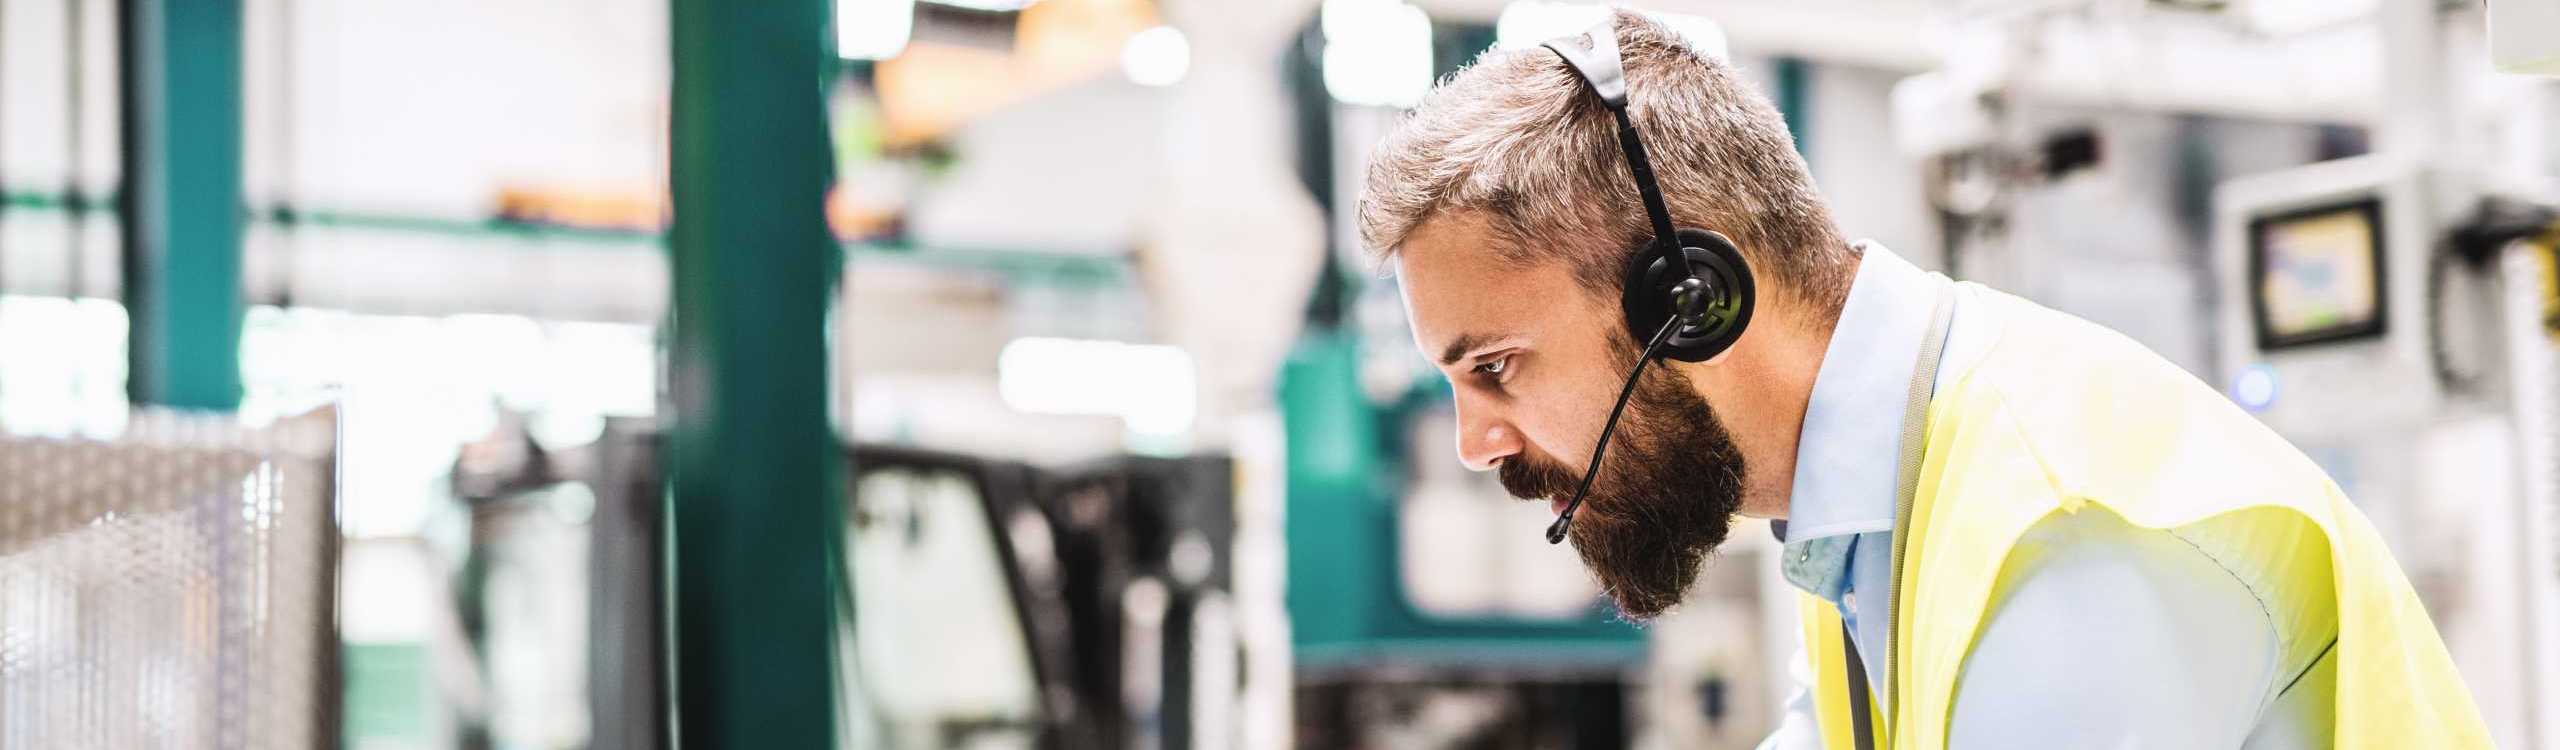 Ein Arbeiter in einer Industriehalle nutzt Sprachsteuerung zur Maschinenbedienung via Headset